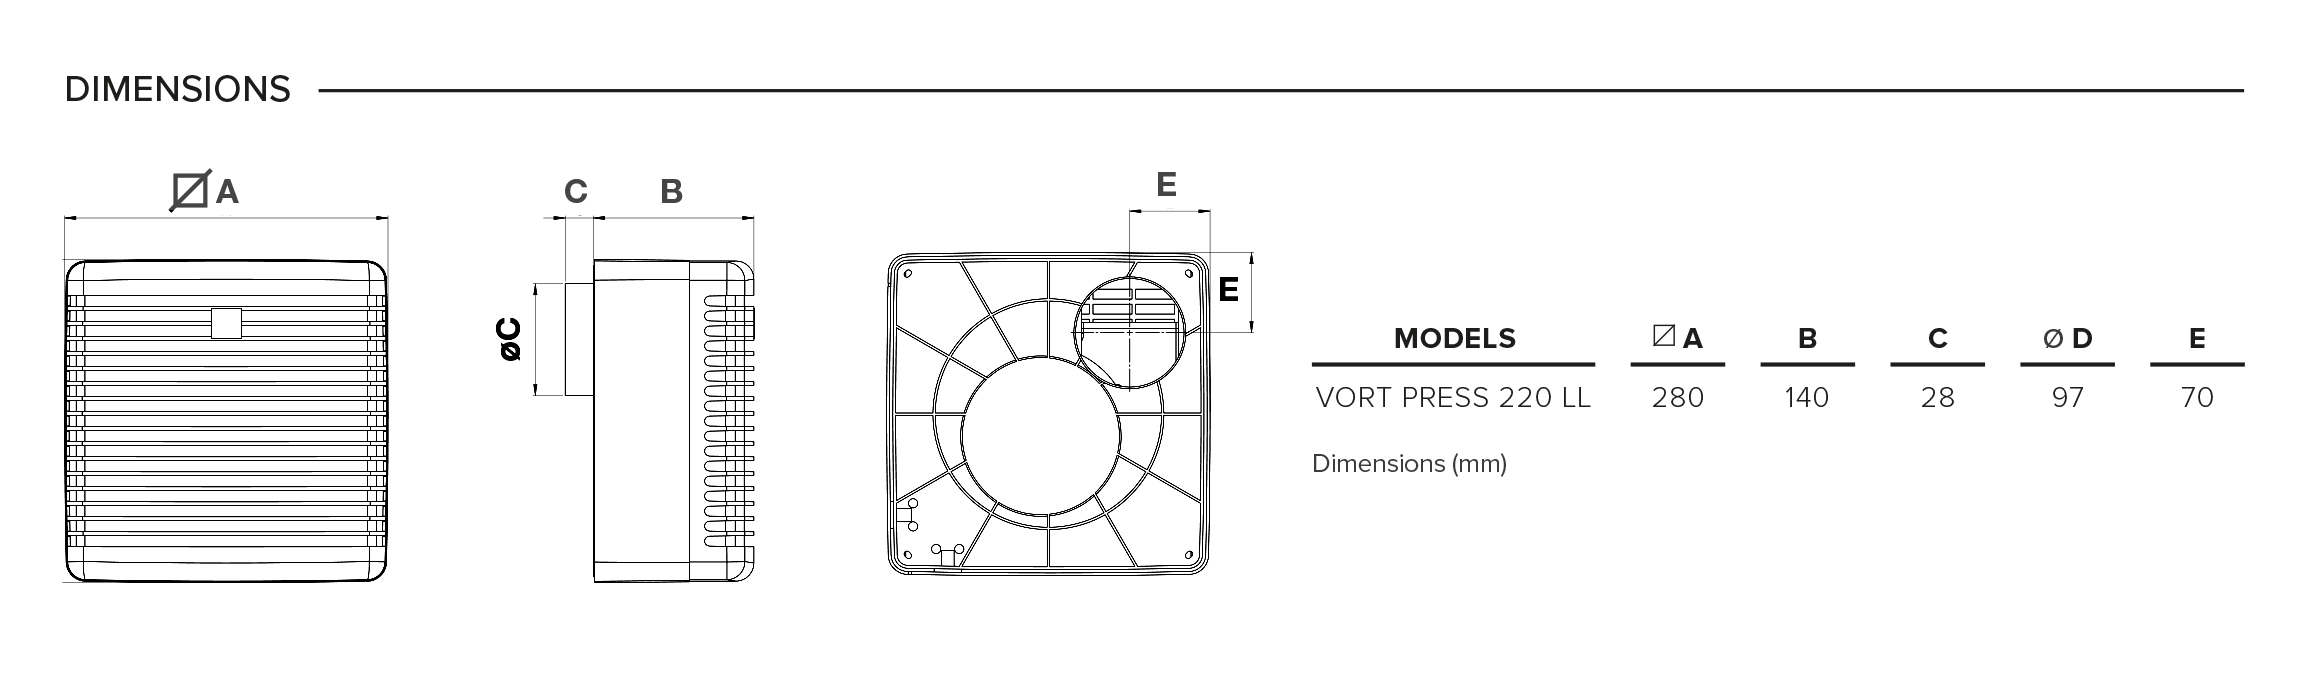 Vortice Vort Press 220 LL Timer Габаритные размеры